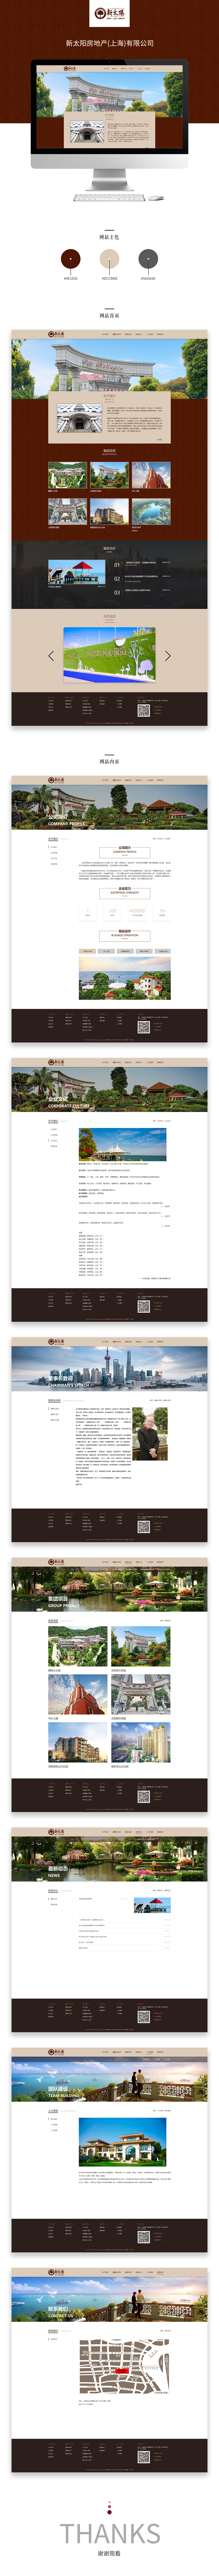 公司案例展示2018-40新太阳房地产(上海)有限公司